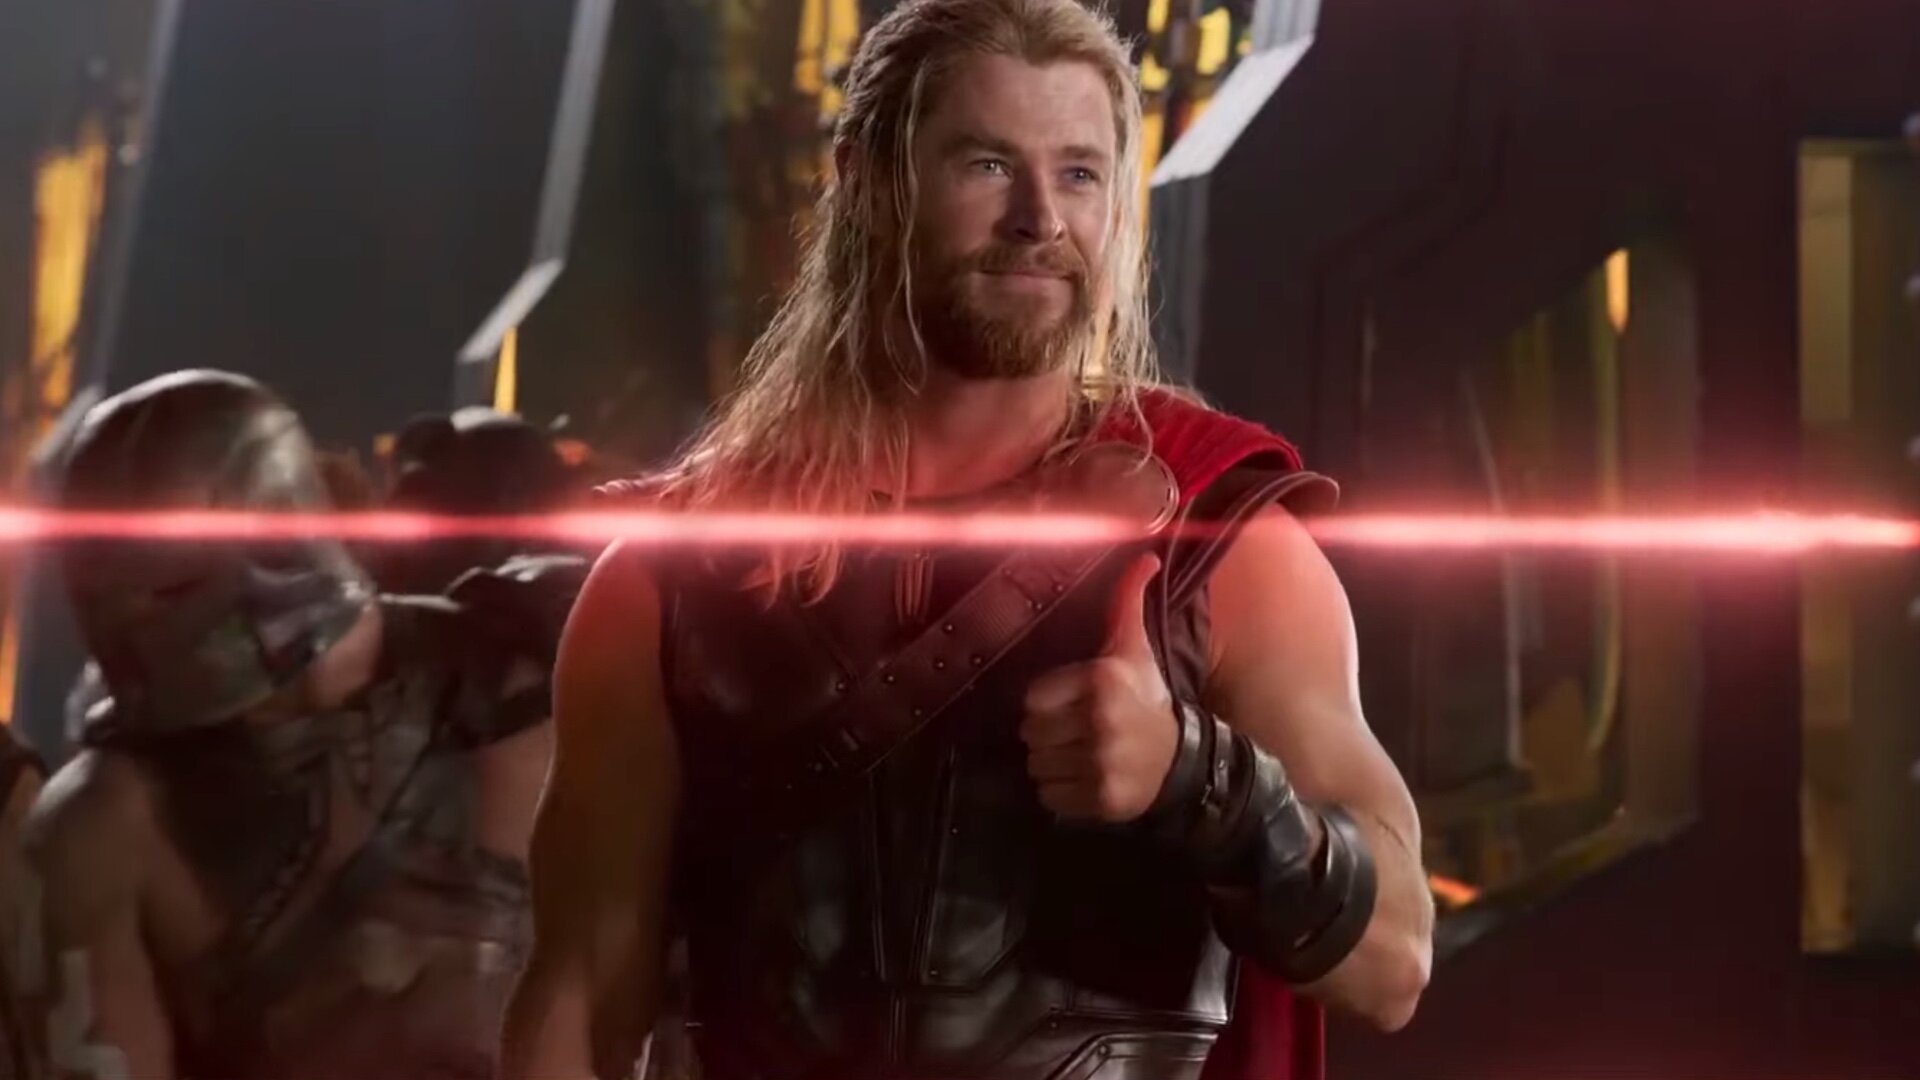 Chris Hemsworth acredita que a franquia de Thor precisa ser reinventada